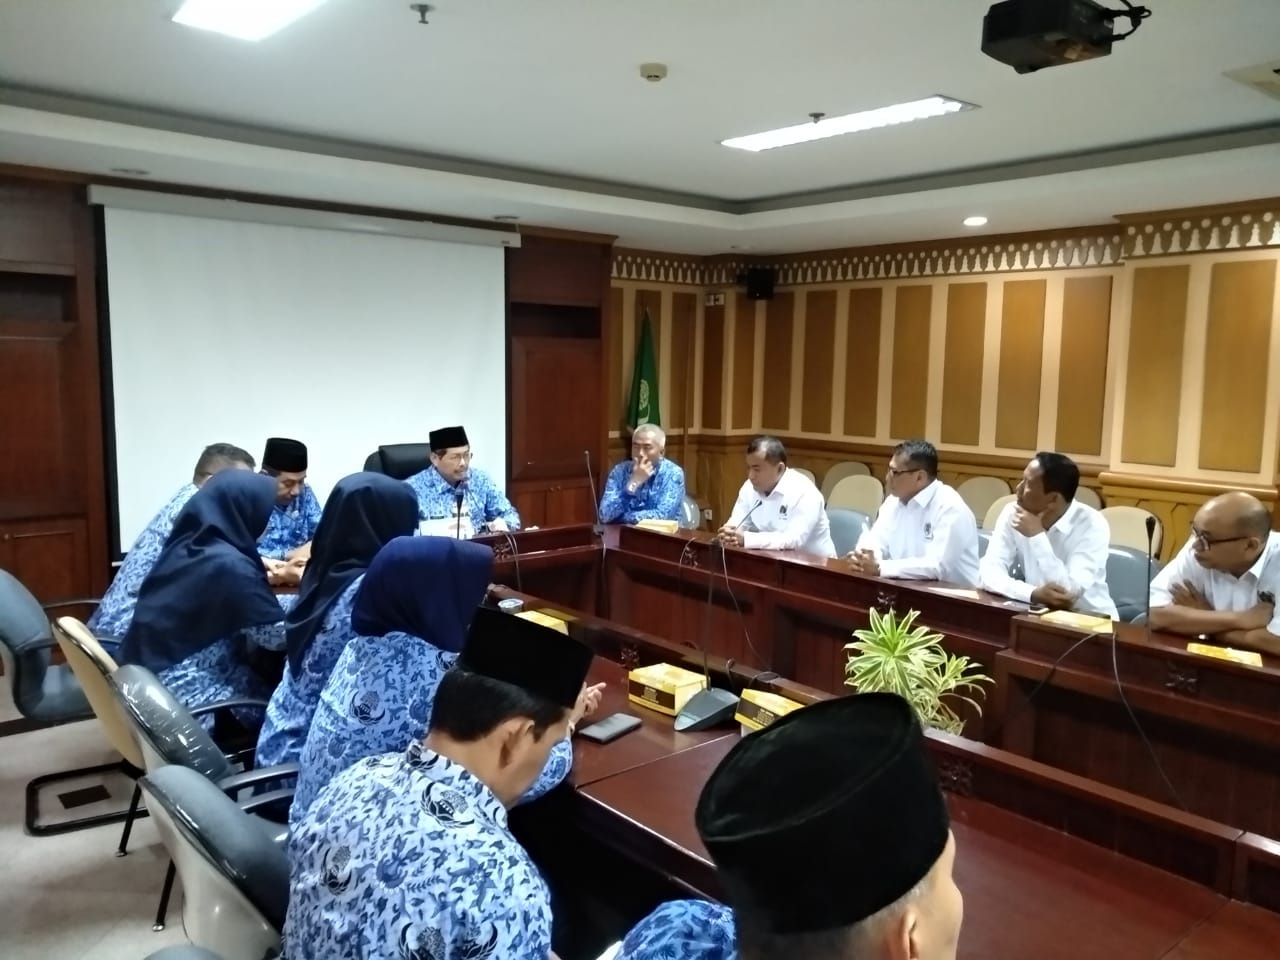  Pengurus PWI DKI Jakarta Audiensi dengan Jajaran Pemkot Jaksel